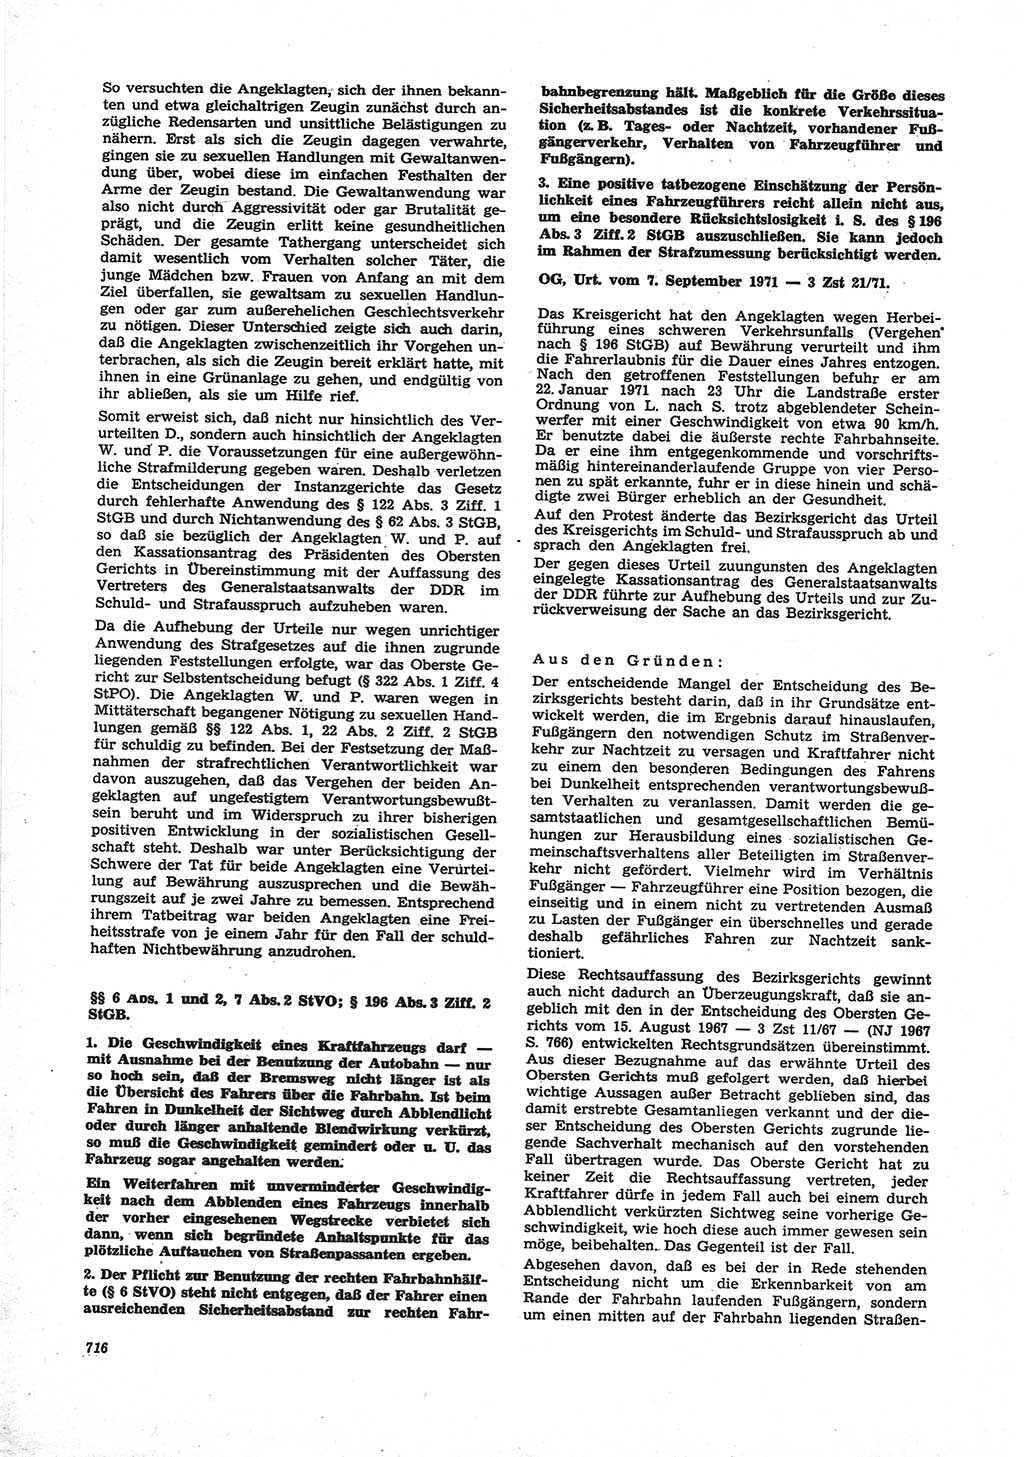 Neue Justiz (NJ), Zeitschrift für Recht und Rechtswissenschaft [Deutsche Demokratische Republik (DDR)], 25. Jahrgang 1971, Seite 716 (NJ DDR 1971, S. 716)